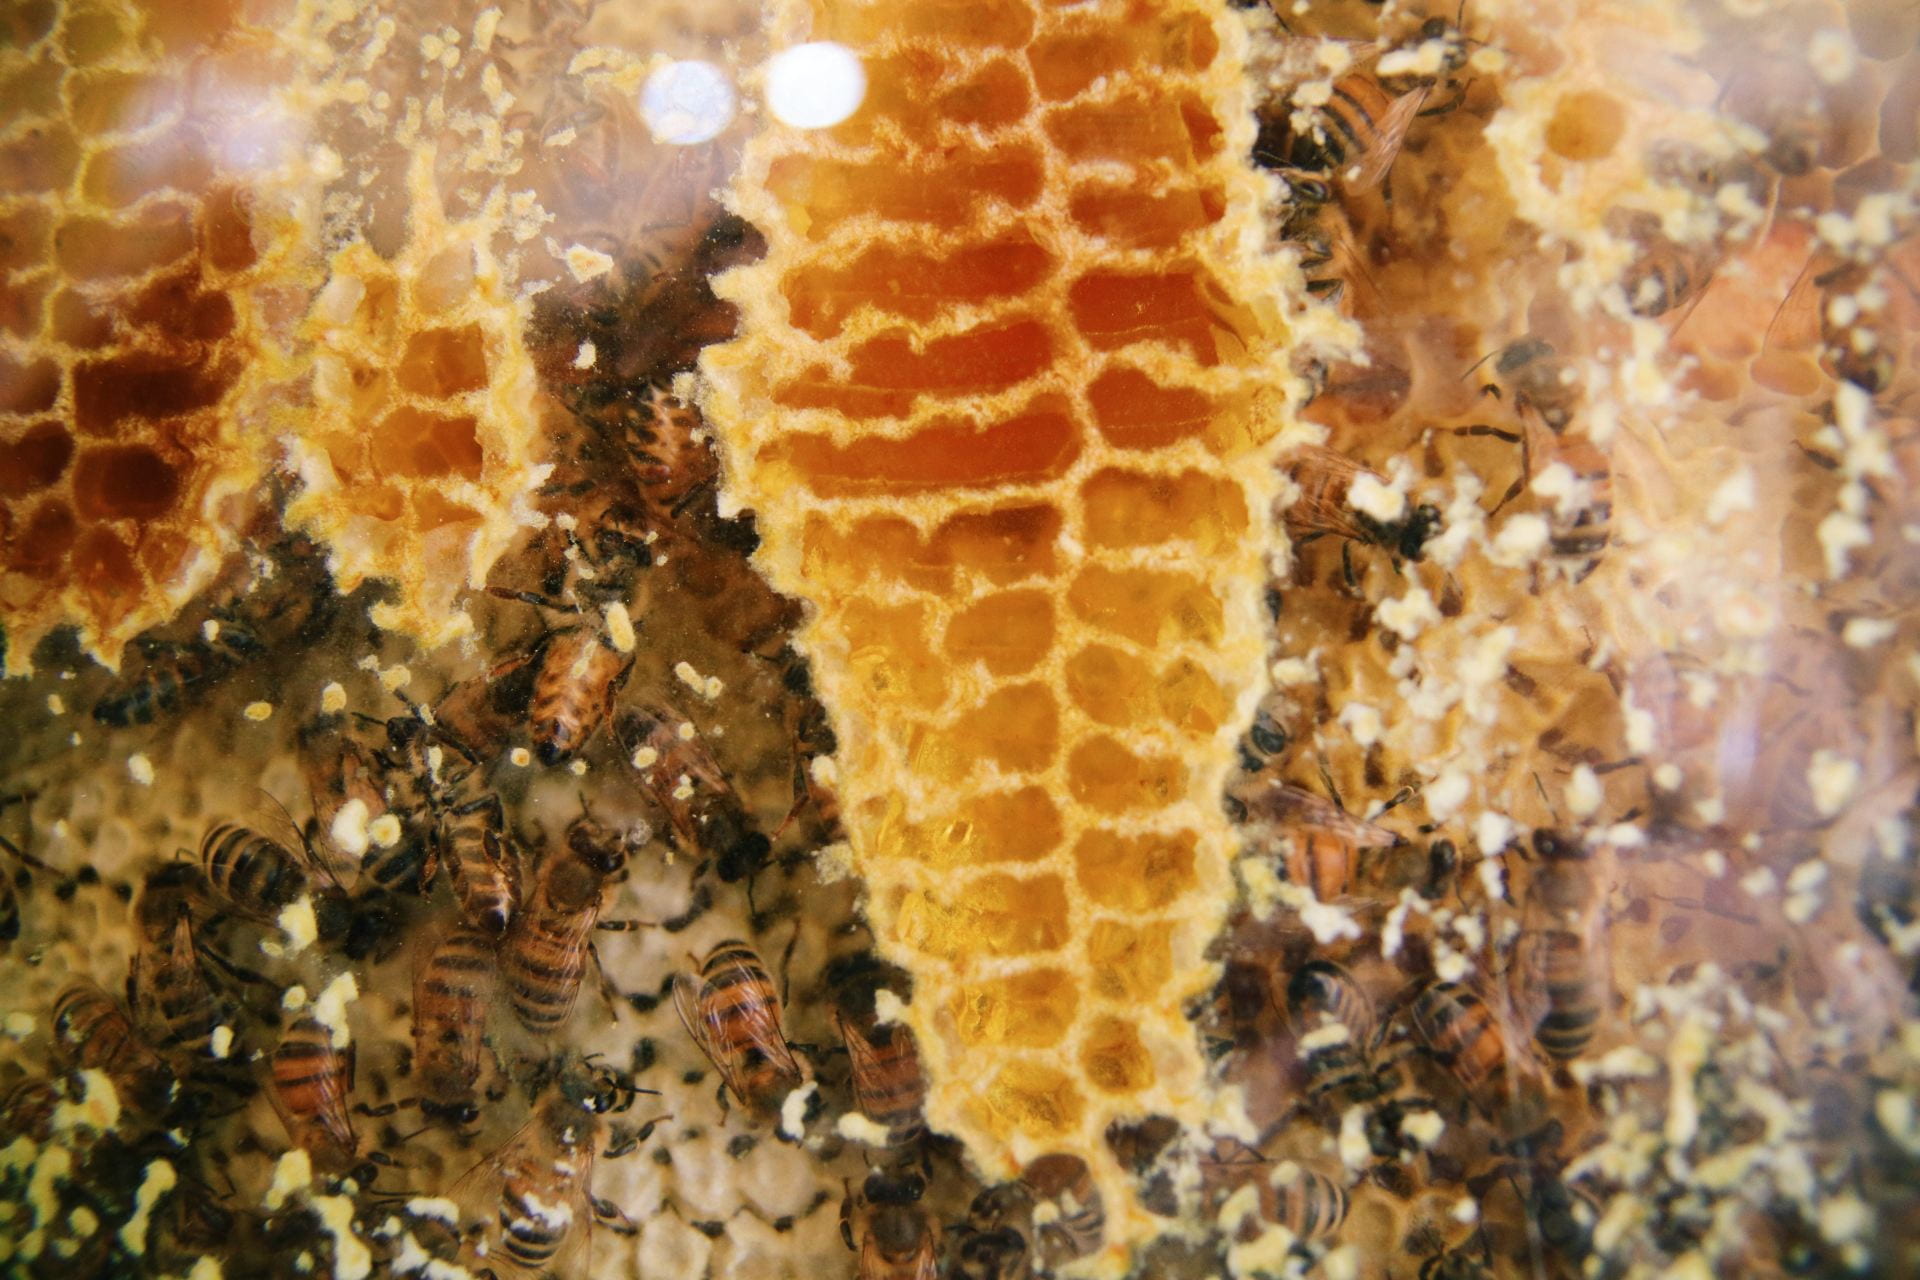 Image of honeycomb built on glass, full of honey